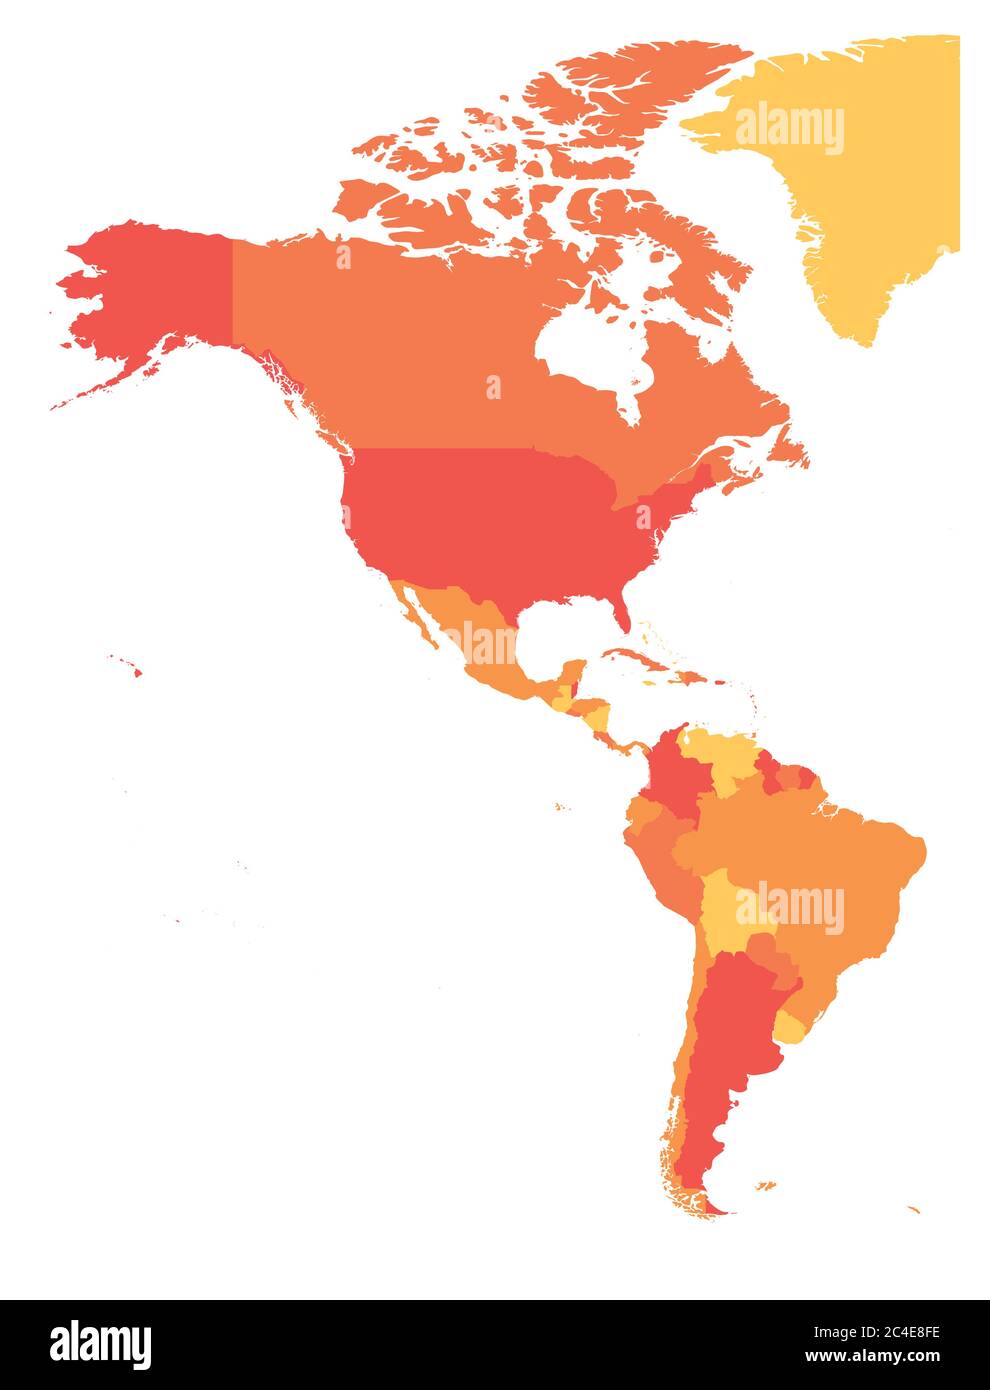 Mapa político de las Américas en cuatro tonos de naranja. América del Norte y del Sur. Ilustración simple de vector plano. Ilustración del Vector